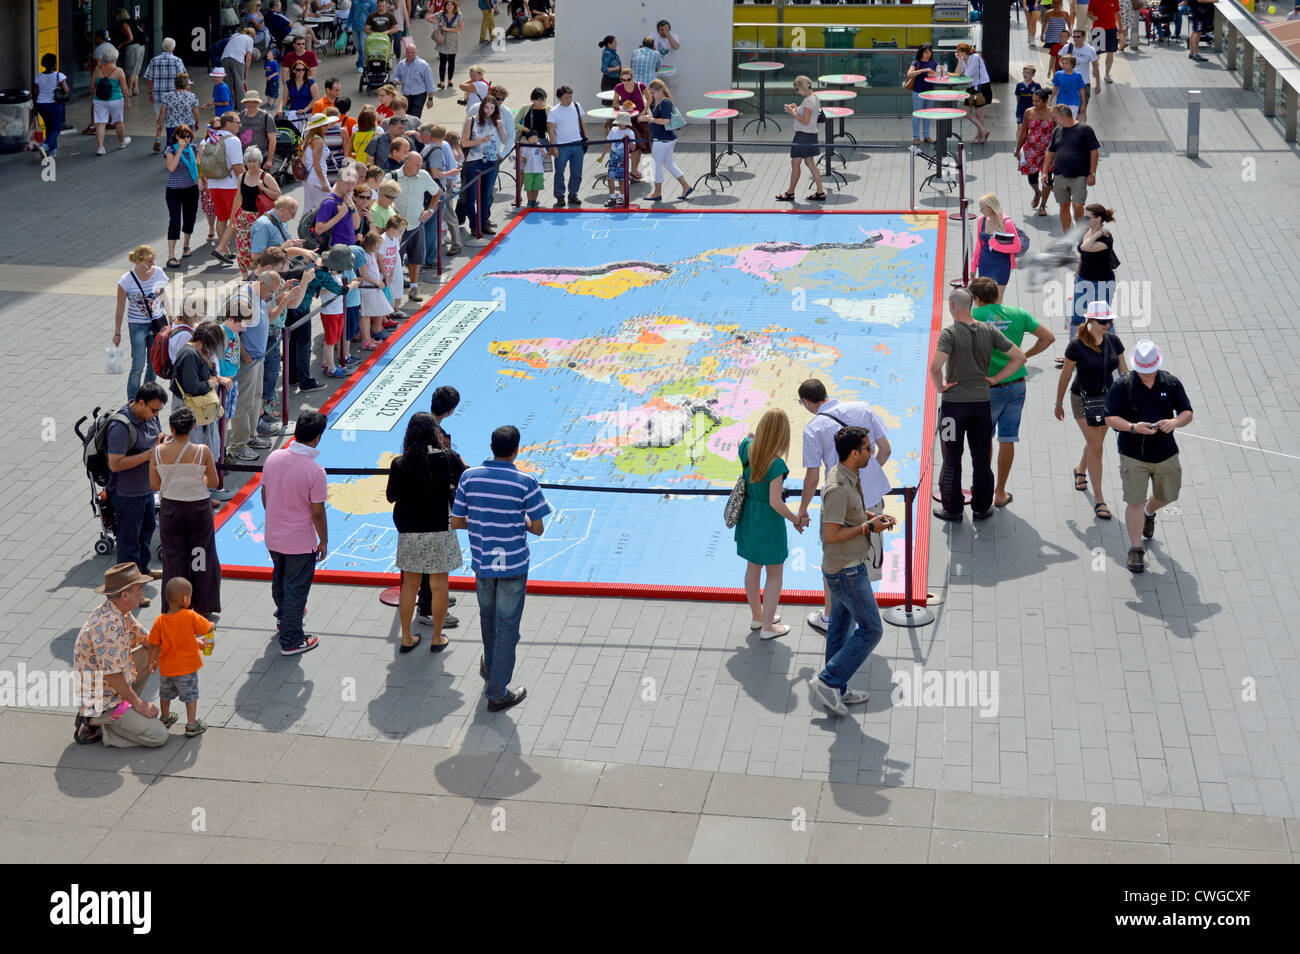 Vue aérienne Londoniens et touristes regardant une partie de la représentation de la carte du monde faite de blocs de construction Lego à l'extérieur de Festival Hall South Bank London Angleterre Royaume-Uni Banque D'Images